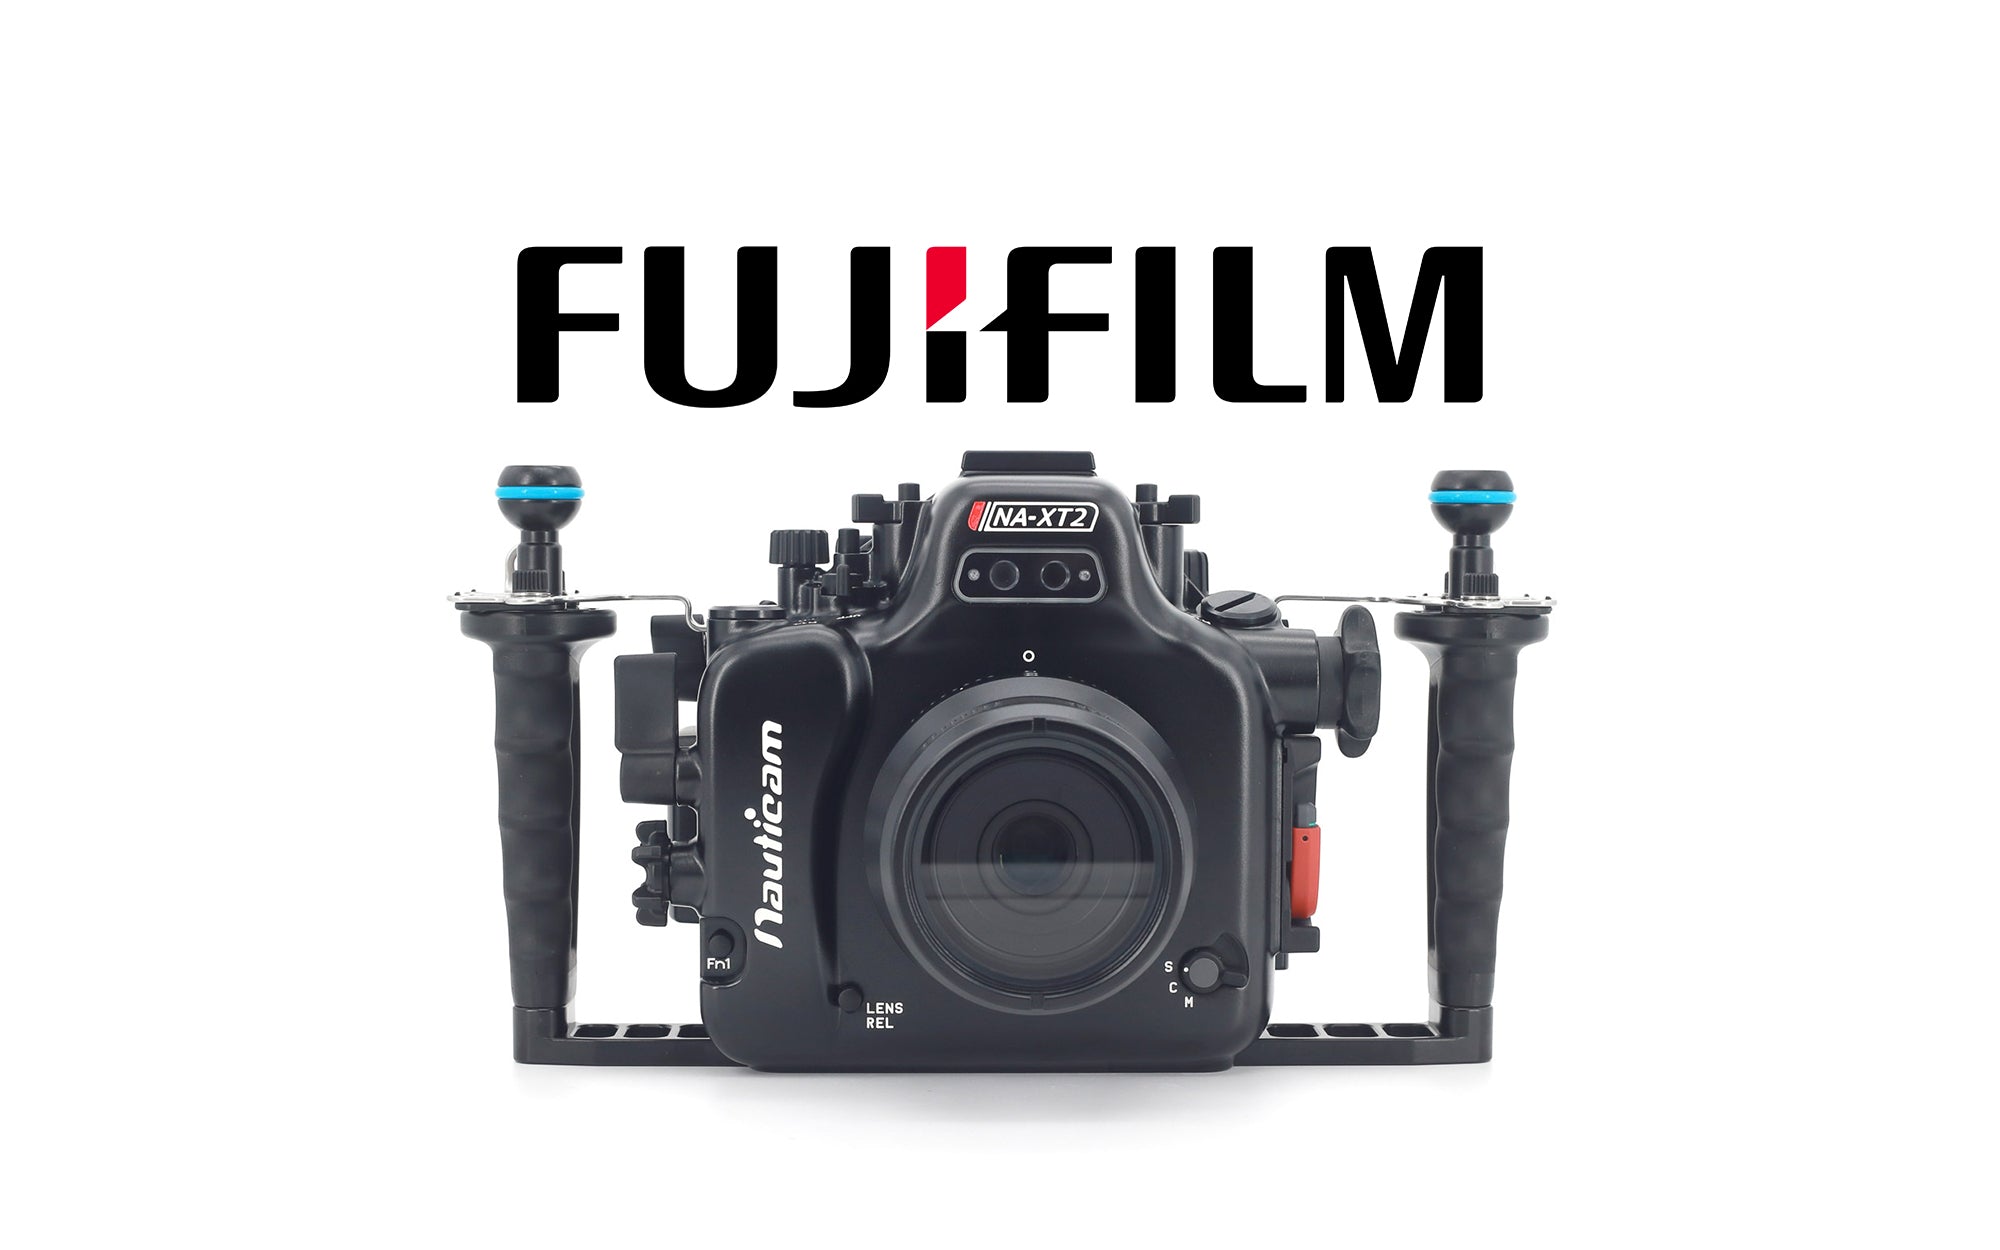 Fujifilm – Nauticam